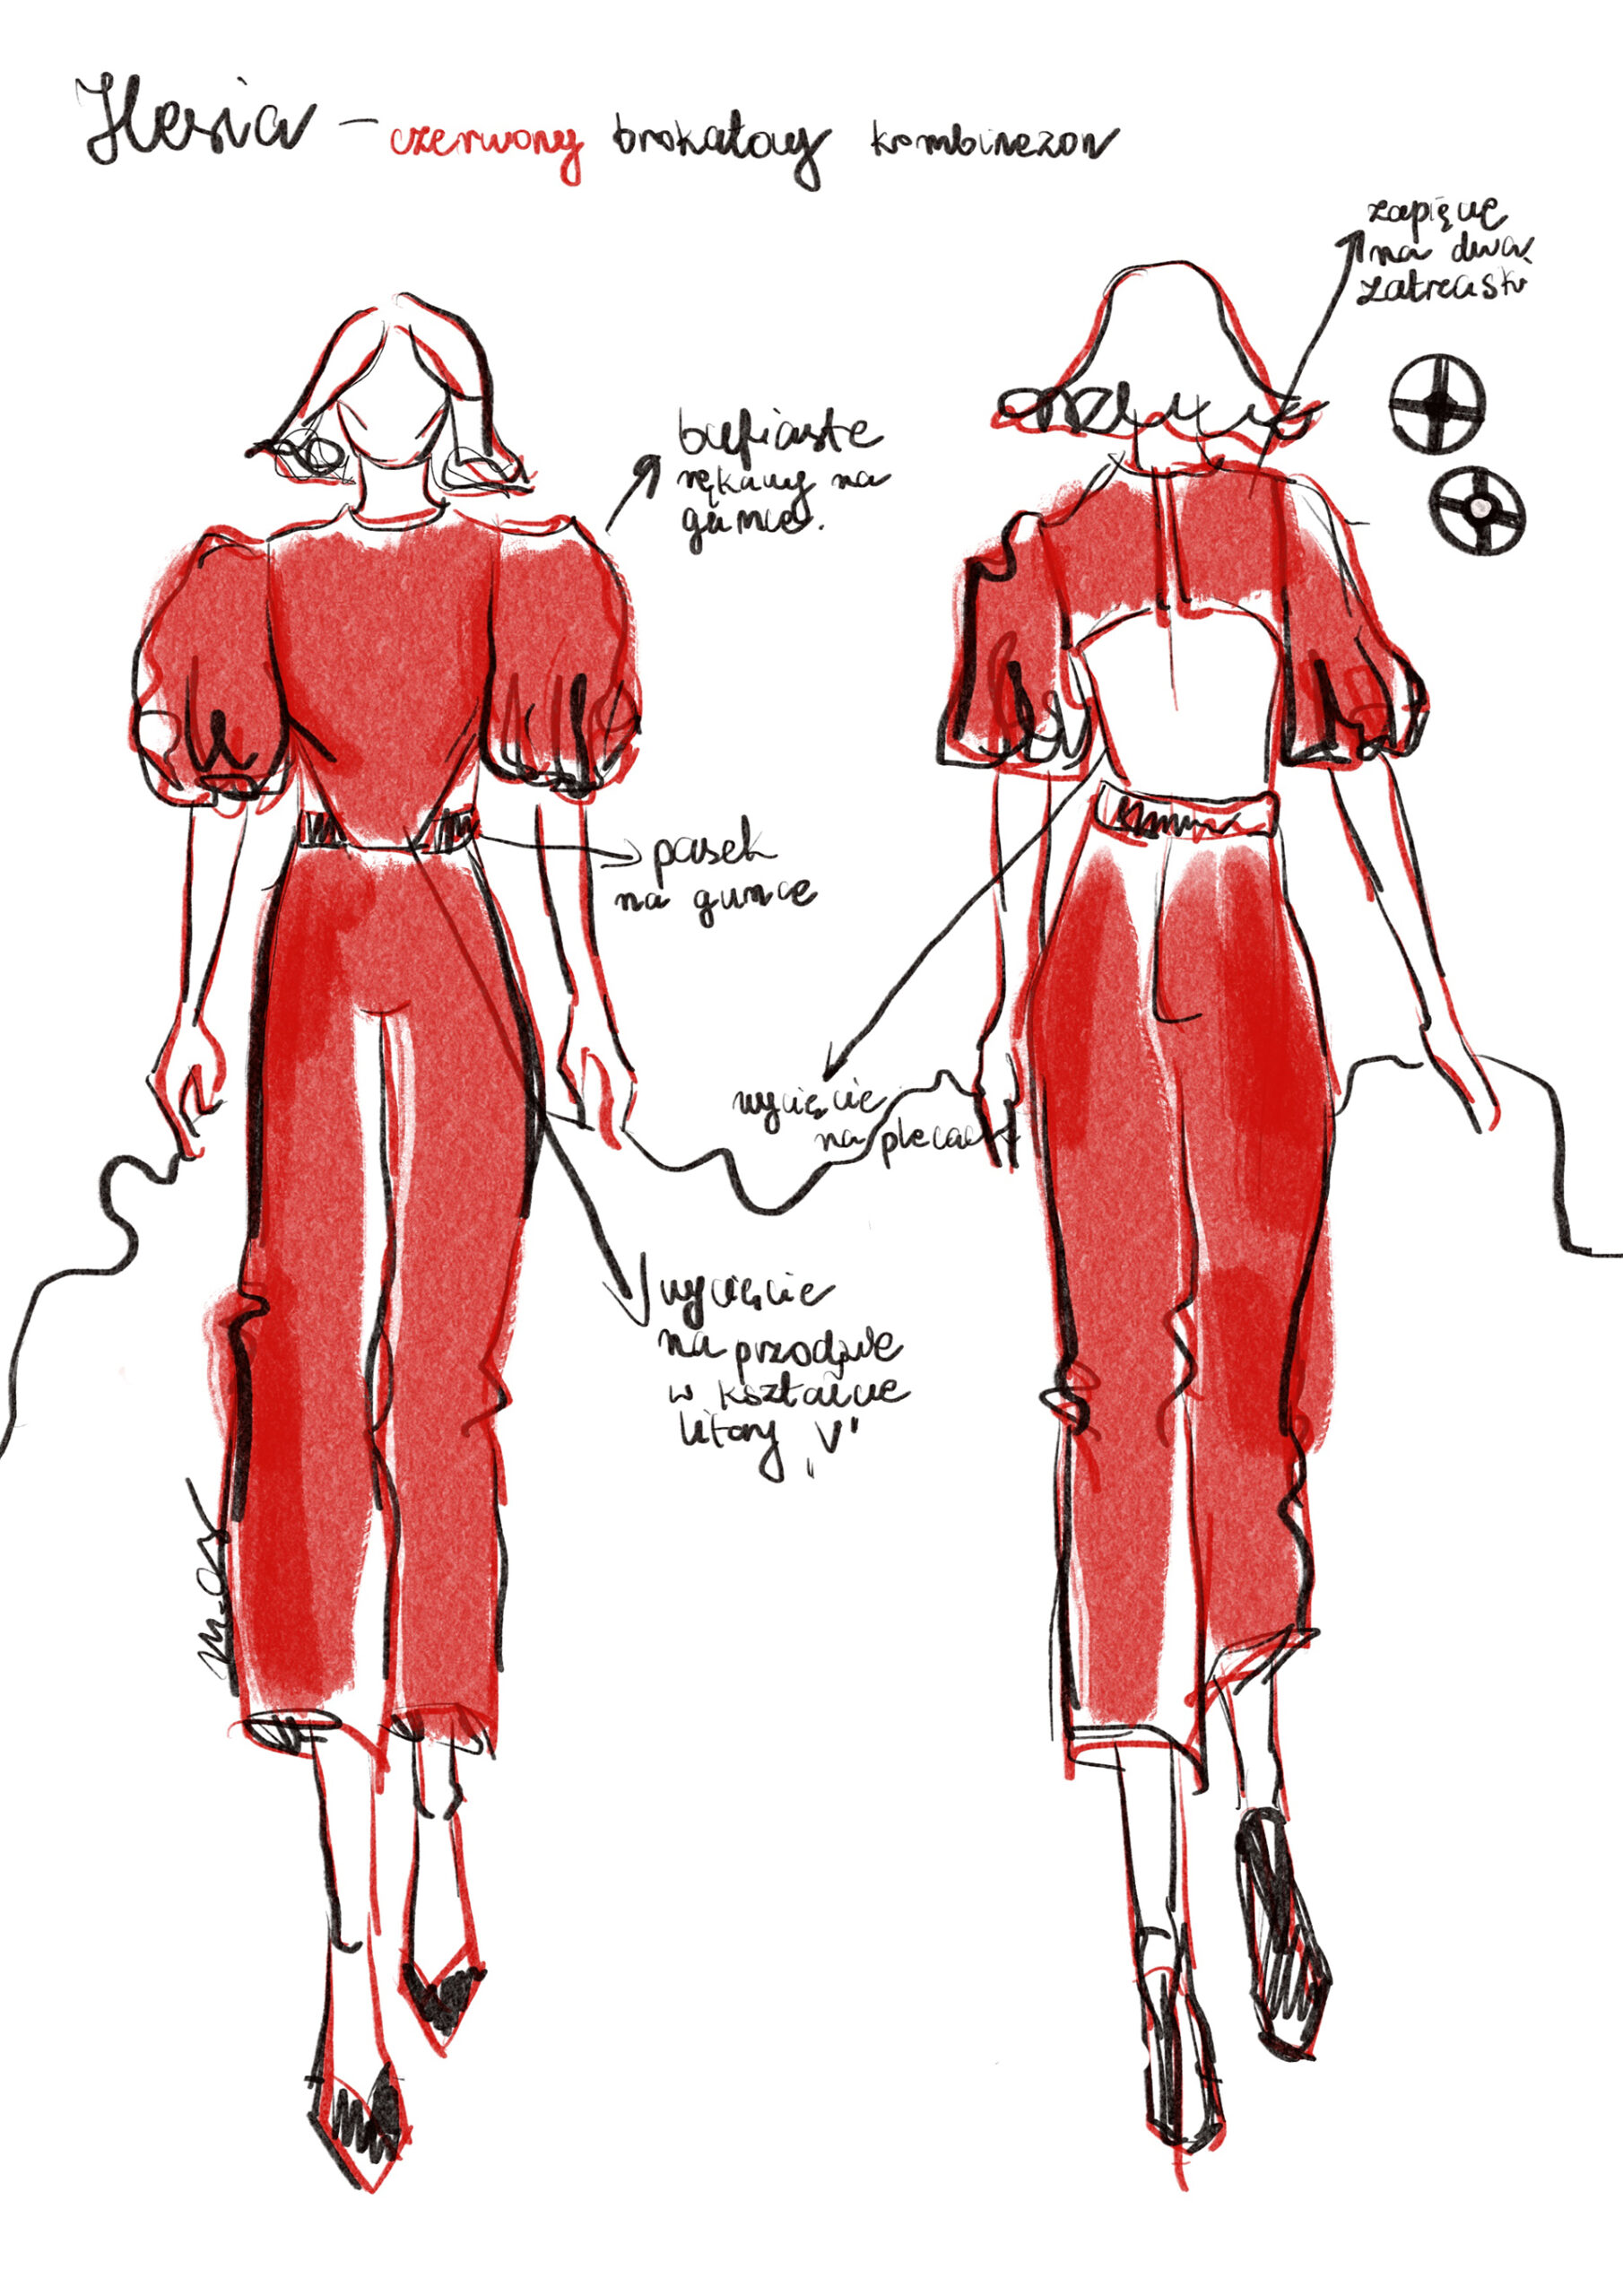 Rysunek kobiety od przodu i od tyłu ubranej w czerwony kombinezon do łydek z bufiastymi rękawami. Obok rysunku opisy.